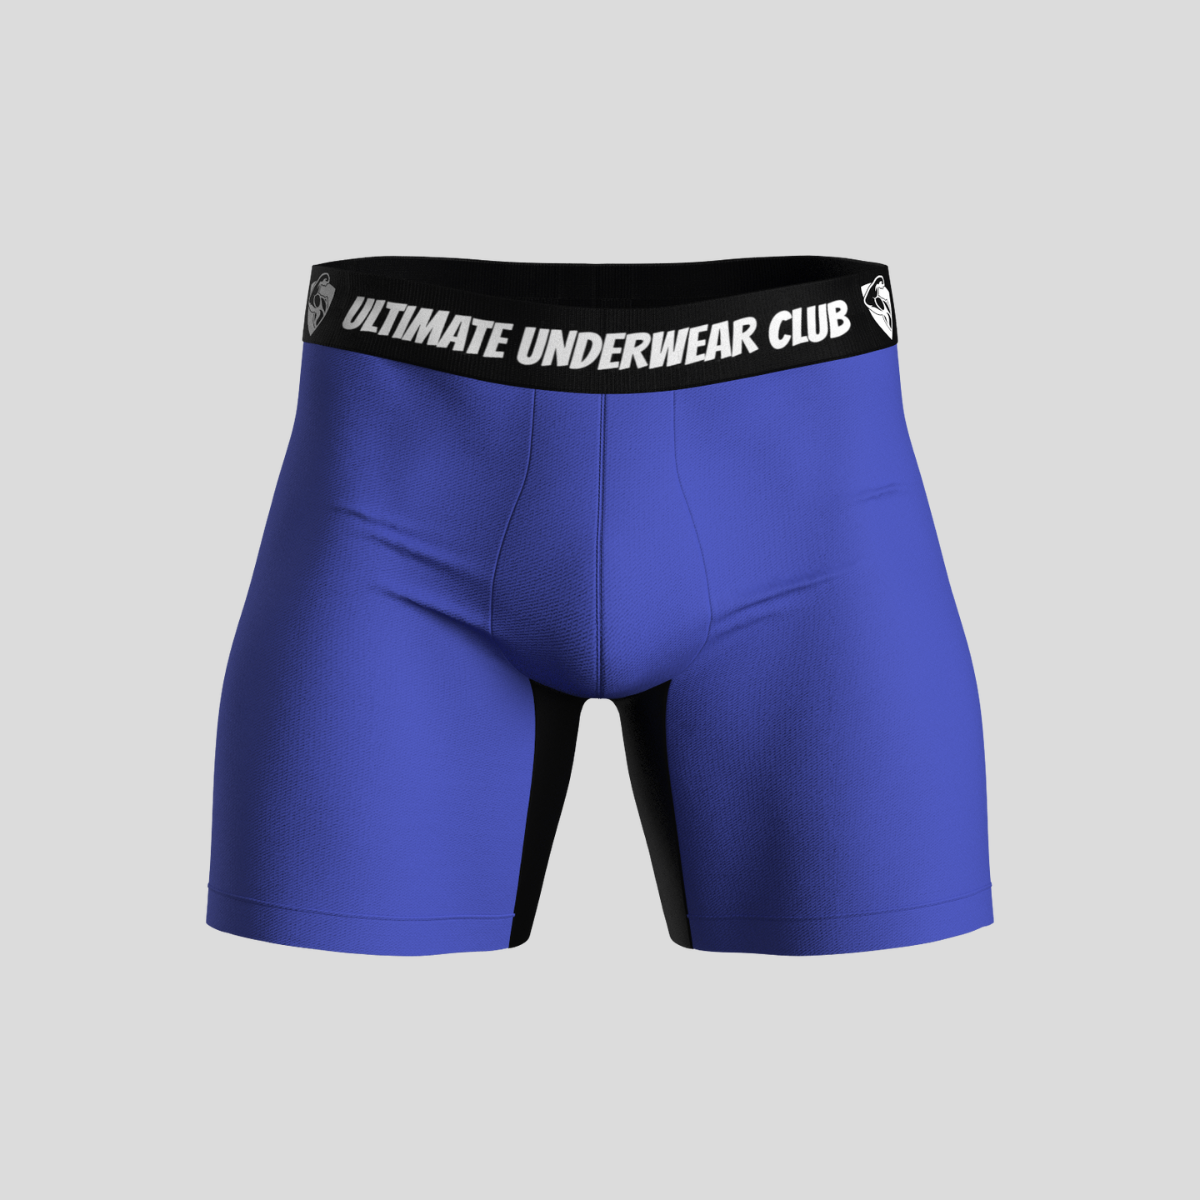 Men's Anti Chafing Underwear Australia